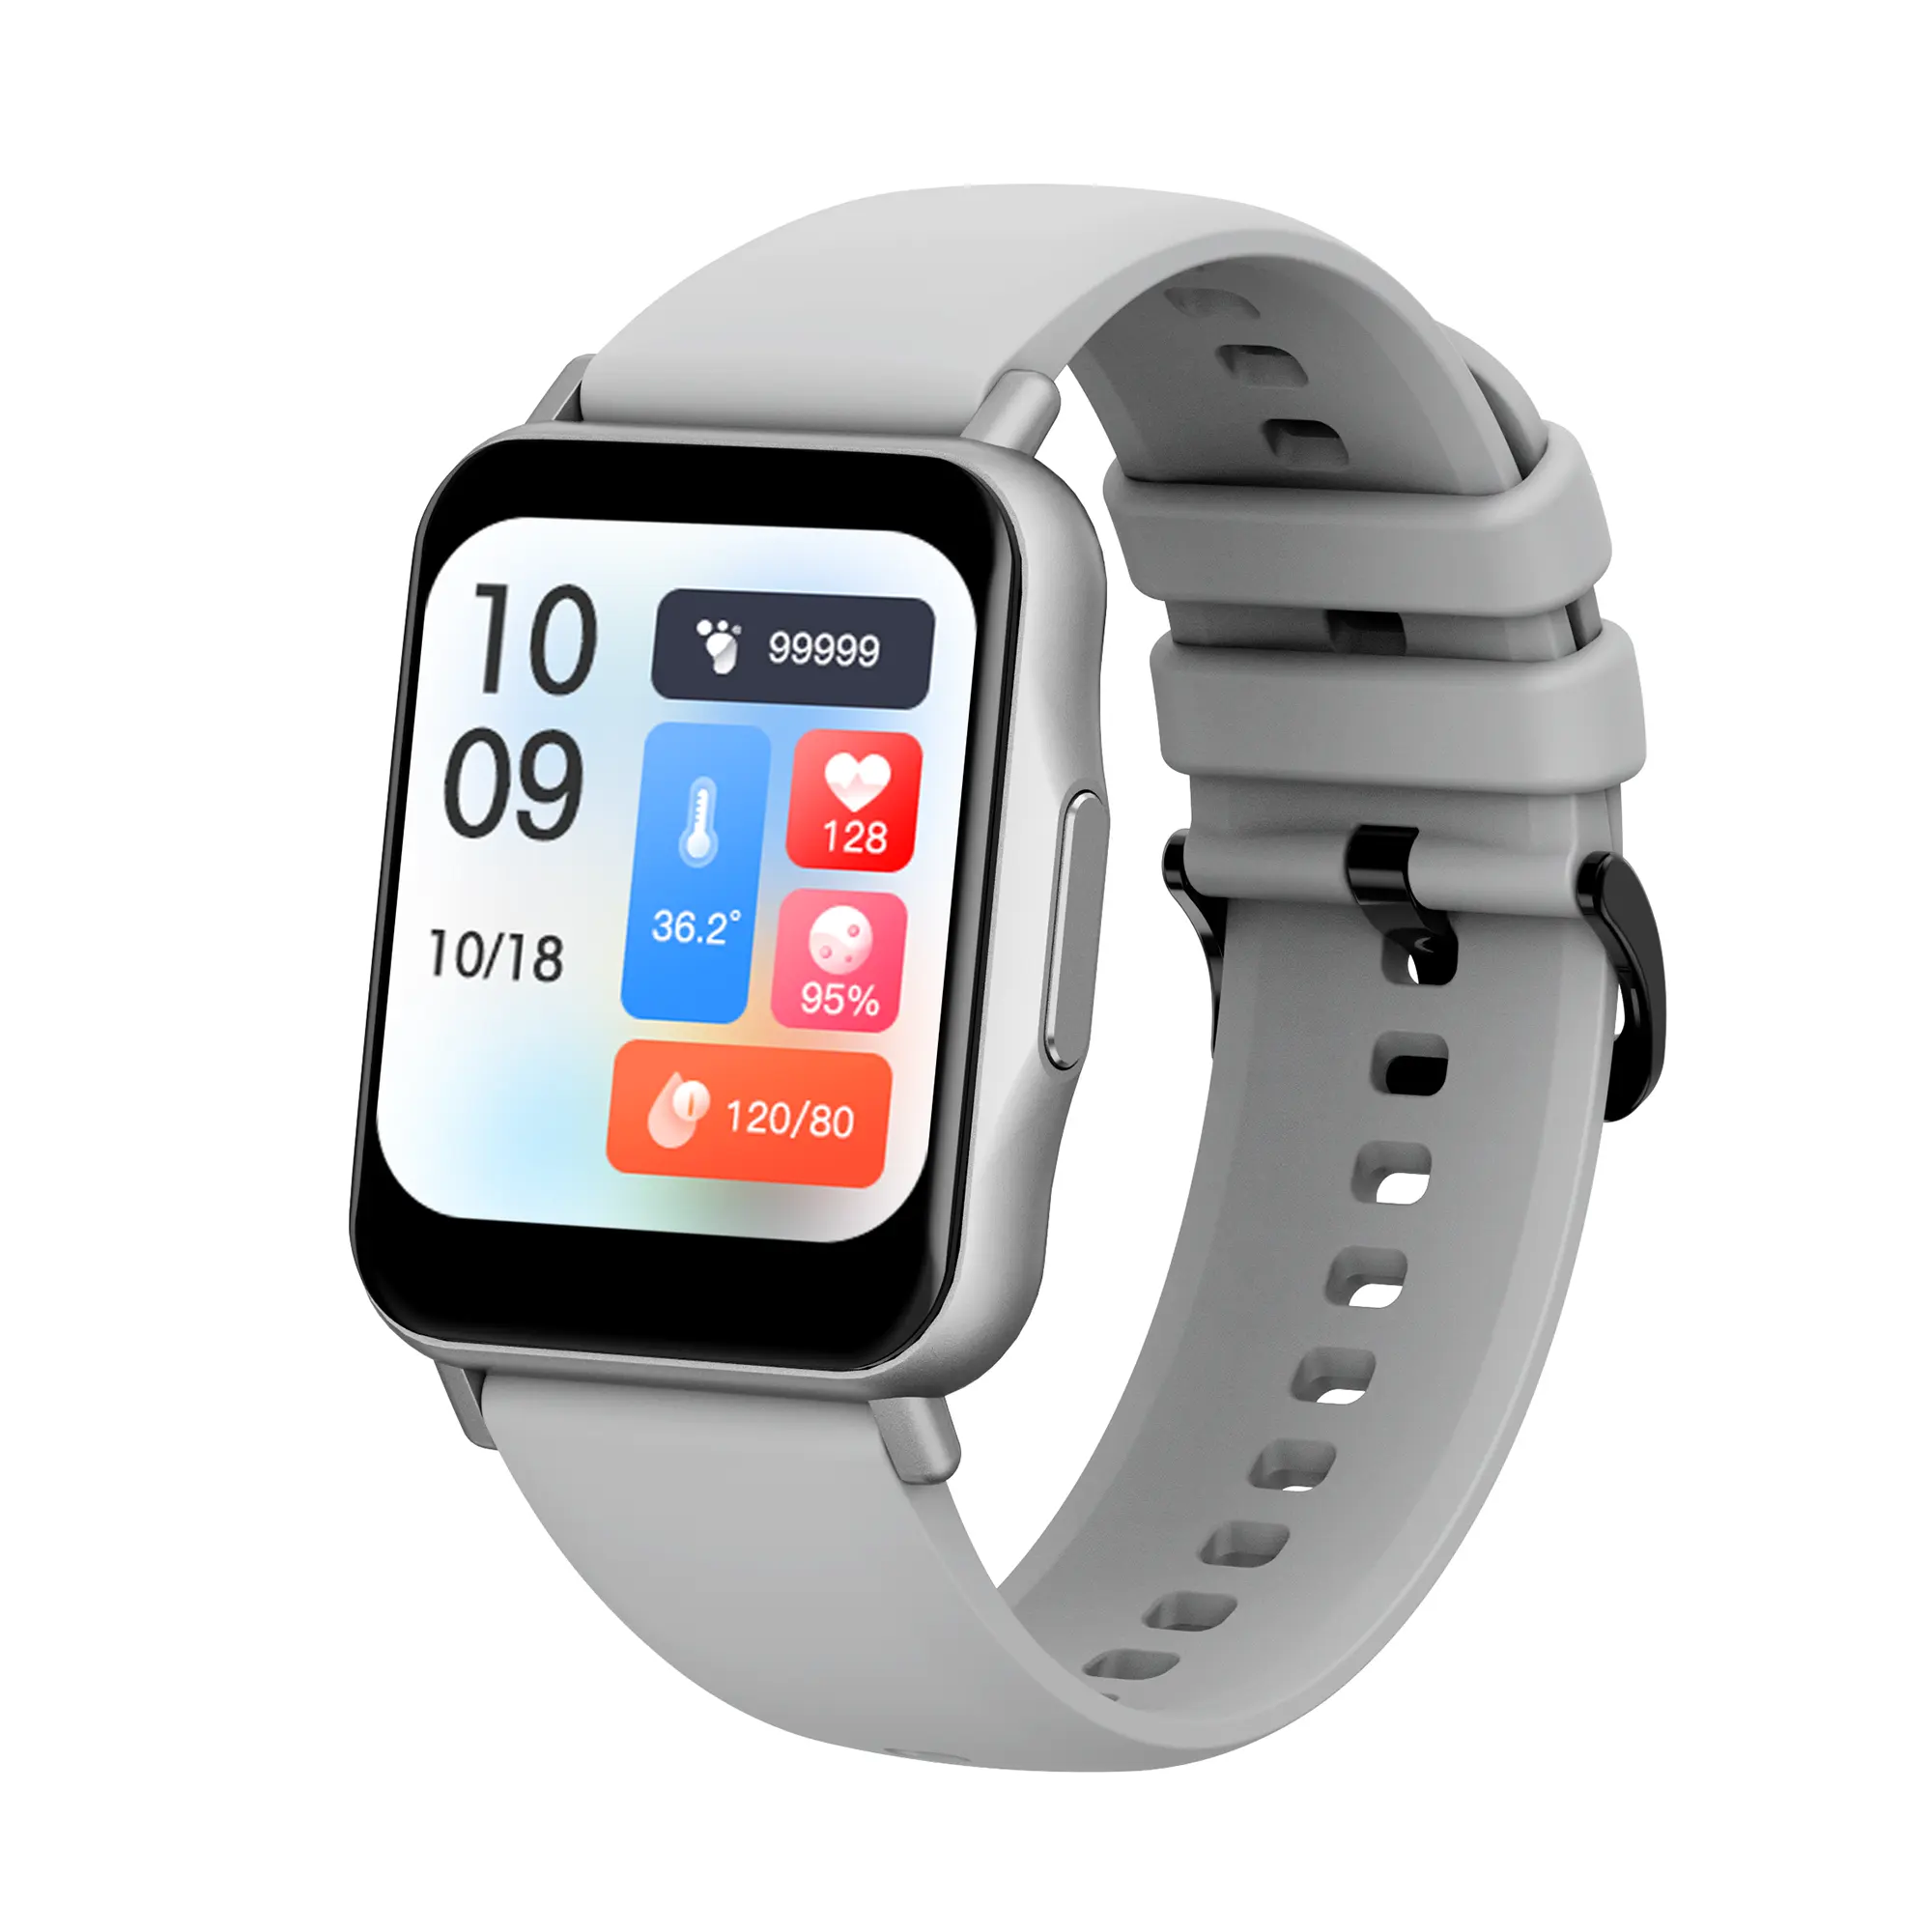 Smartwatch prodotti di tendenza nuovi arrivi dispositivo indossabile reloj Inteligente smartwatch online smart watch io Q15PRO